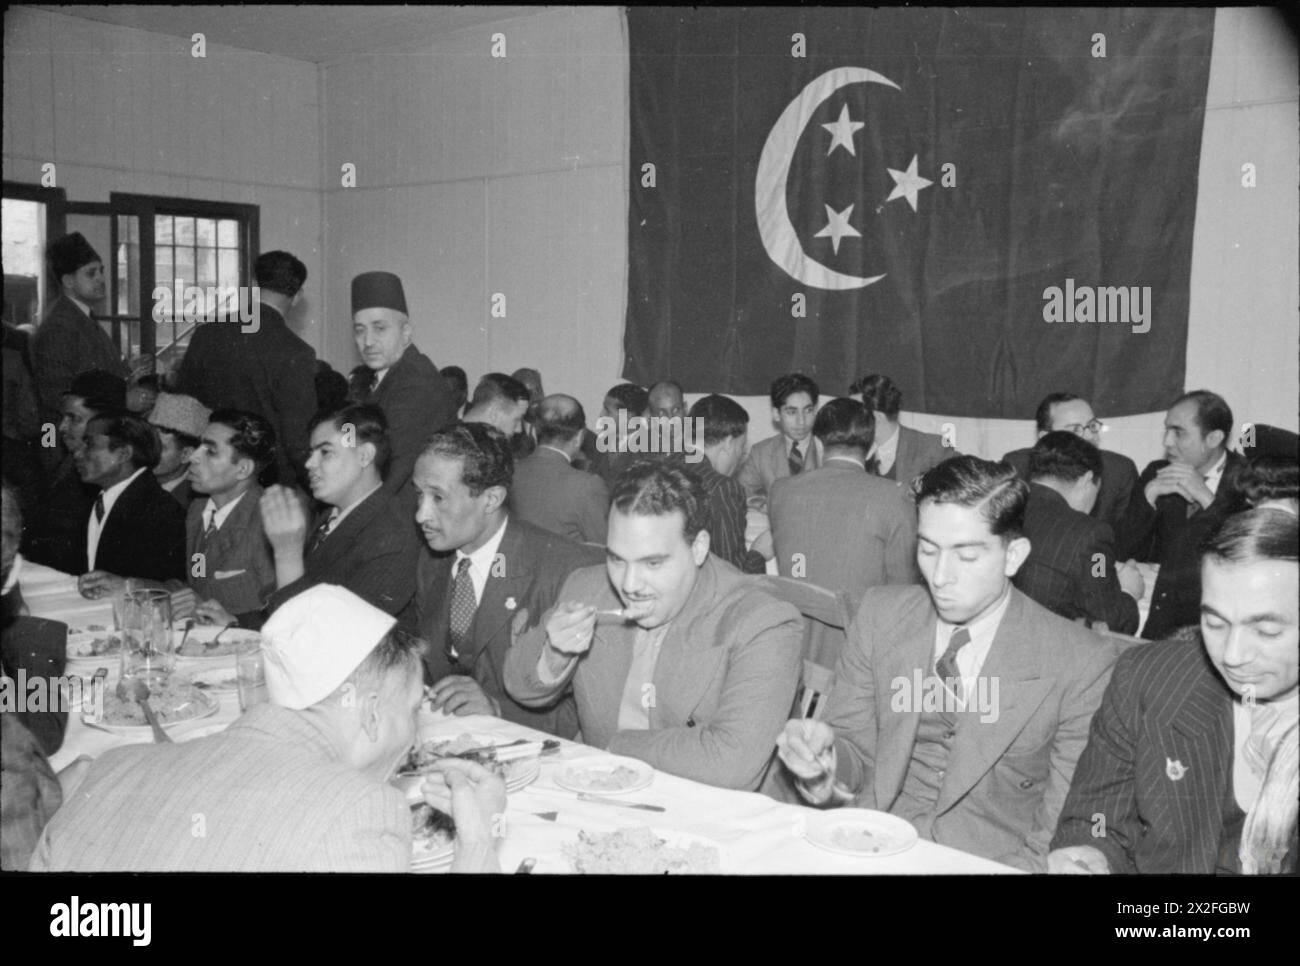 MUSULMANI IN GRAN BRETAGNA: CELEBRAZIONI EID UL FITR, 1941 - Una vista degli uomini che si godono una festa dopo la cerimonia Eid ul Fitr alla Moschea di East London Foto Stock